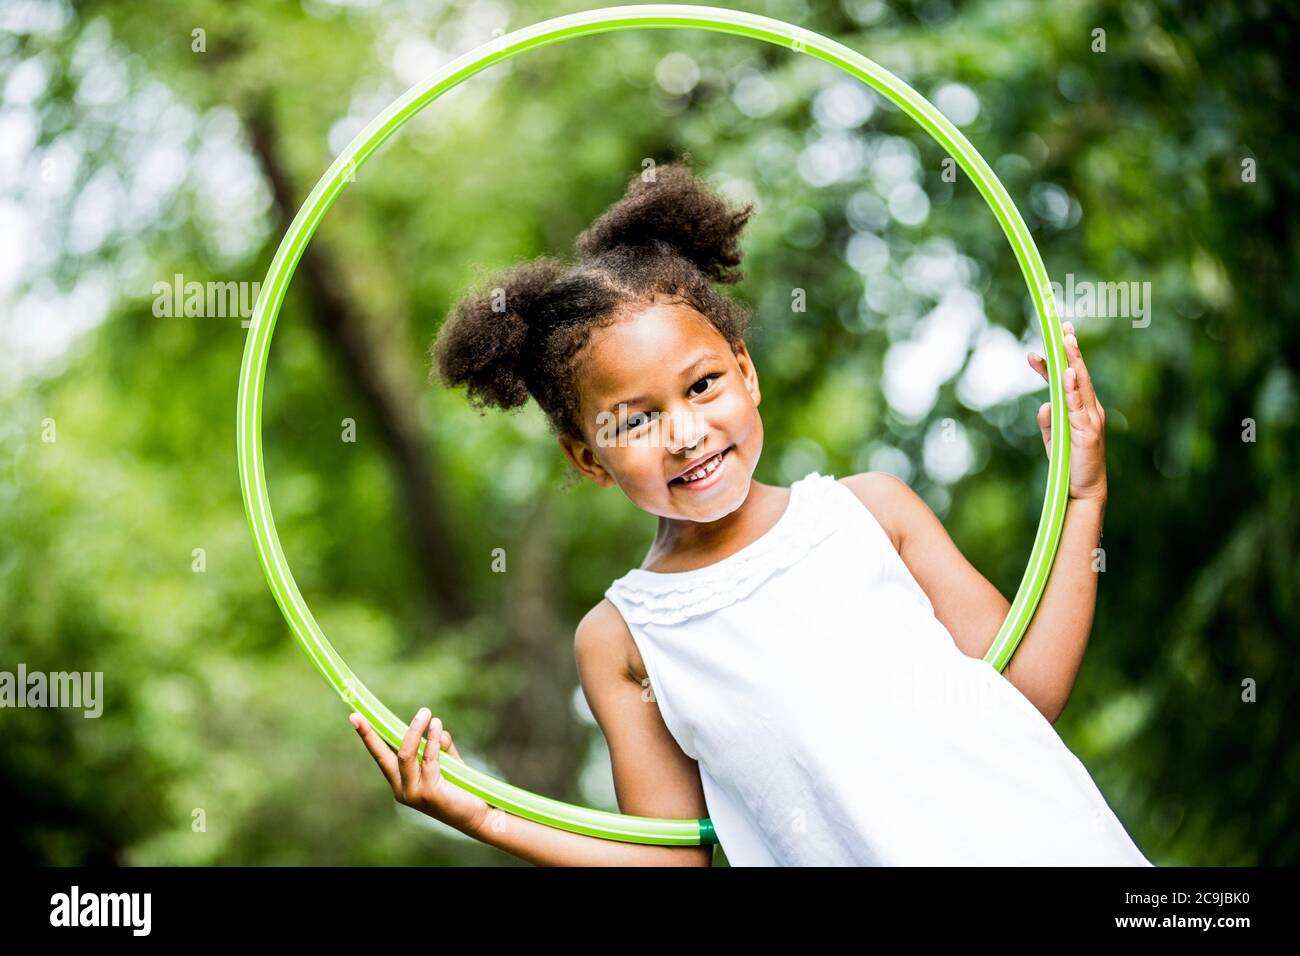 Fille jouant avec hula hoop dans le parc, souriant, portrait. Banque D'Images